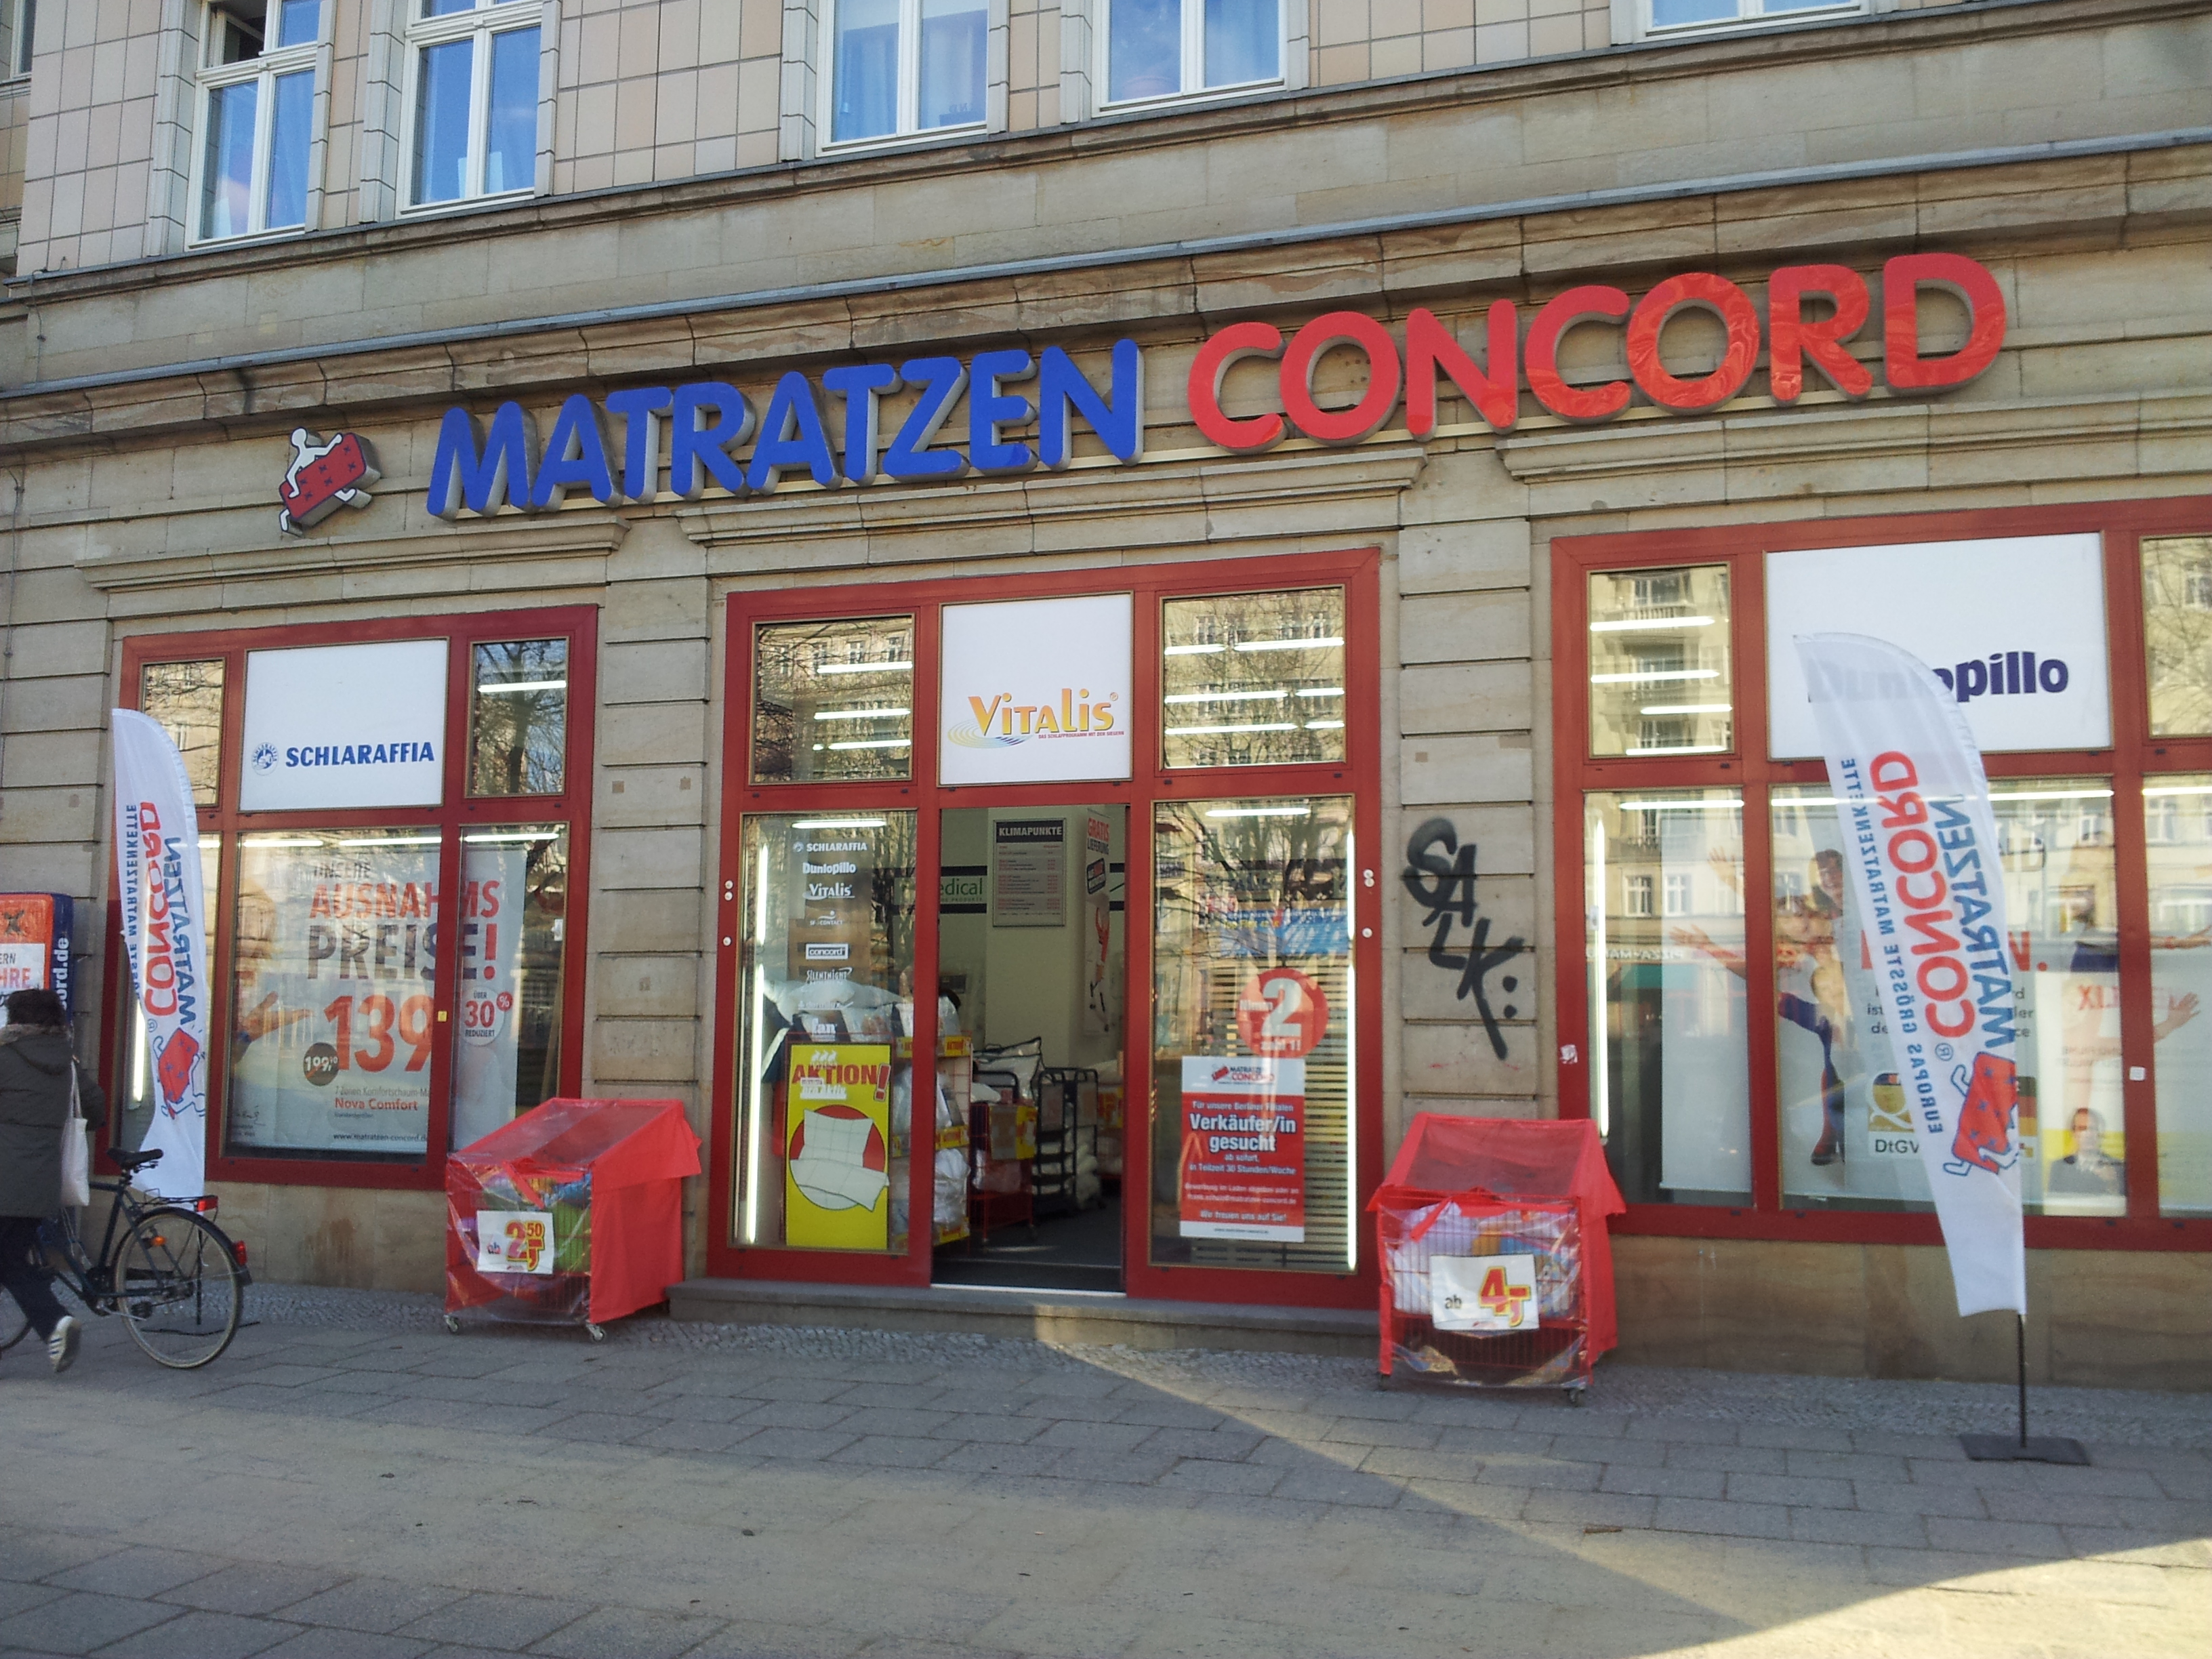 ➤ Matratzen Concord GmbH 10247 Berlin-Friedrichshain Öffnungszeiten |  Adresse | Telefon